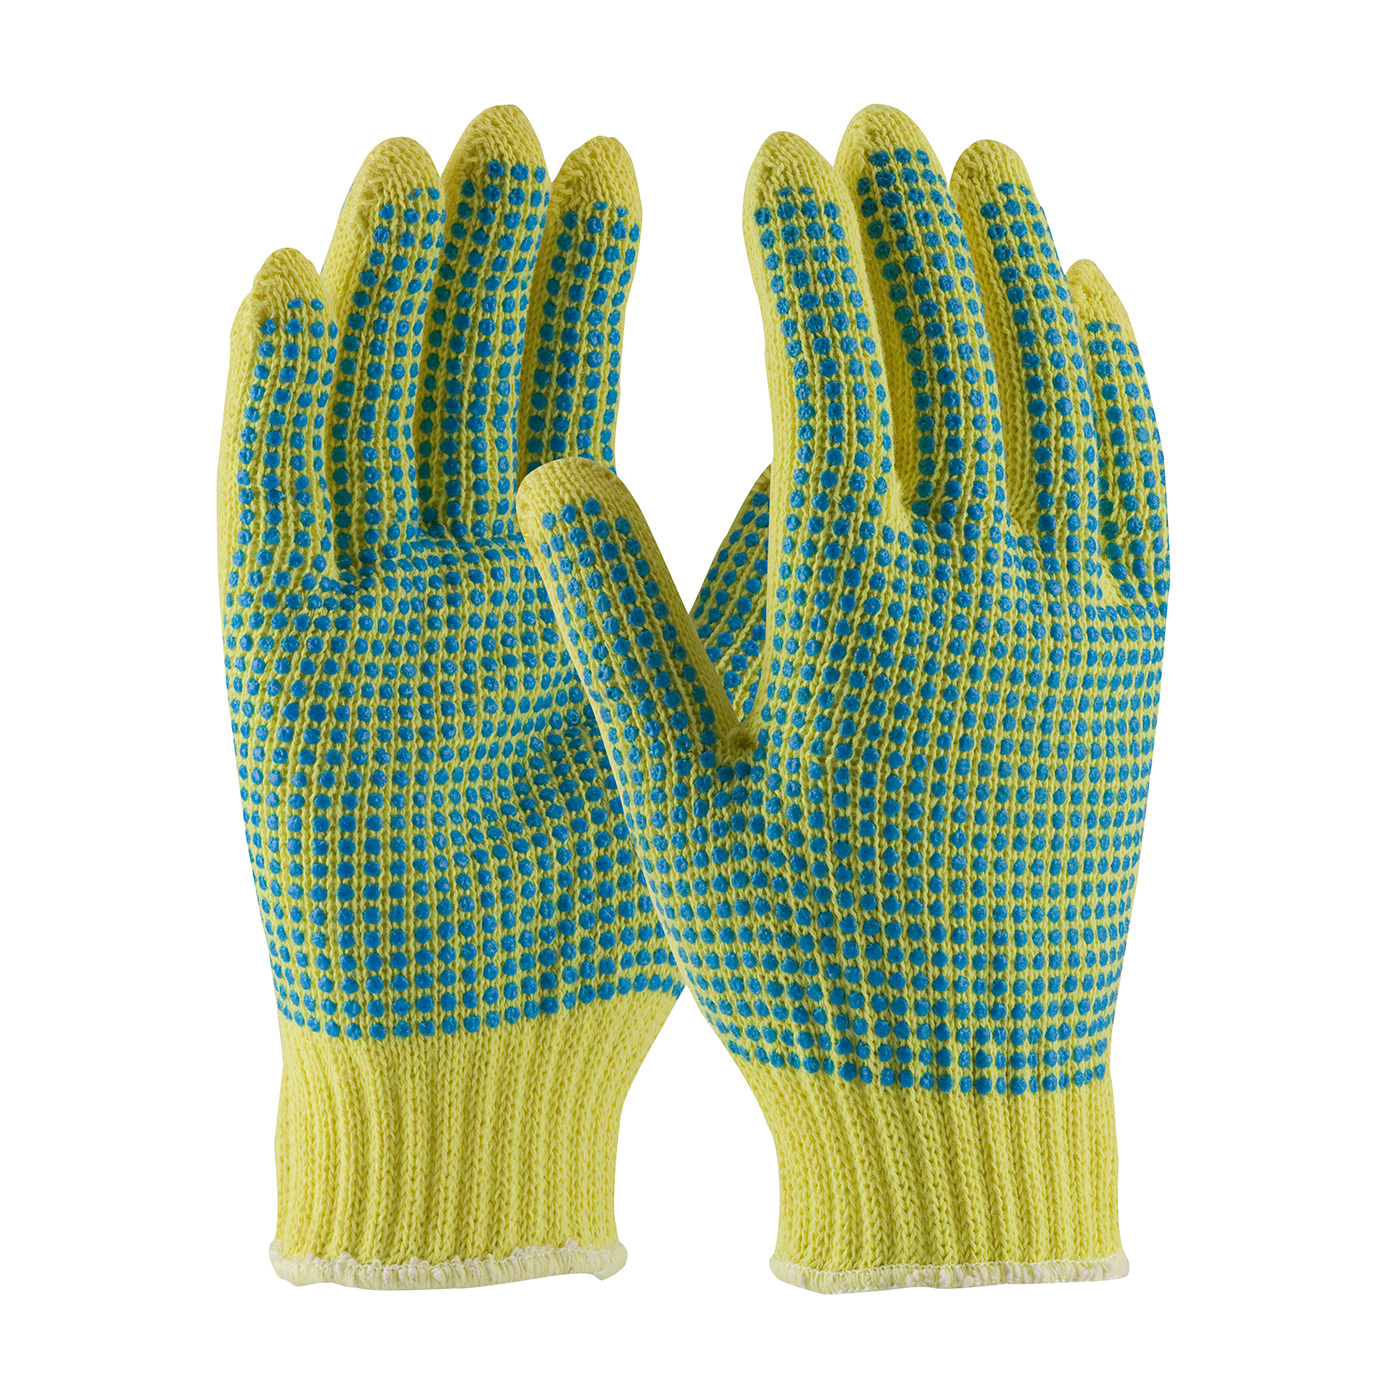 Kut Gard Seamless Knit
Kevlar Glove with
Double-Sided PVC Dot Grip -
Medium Weight, XL - (6dz/cs)